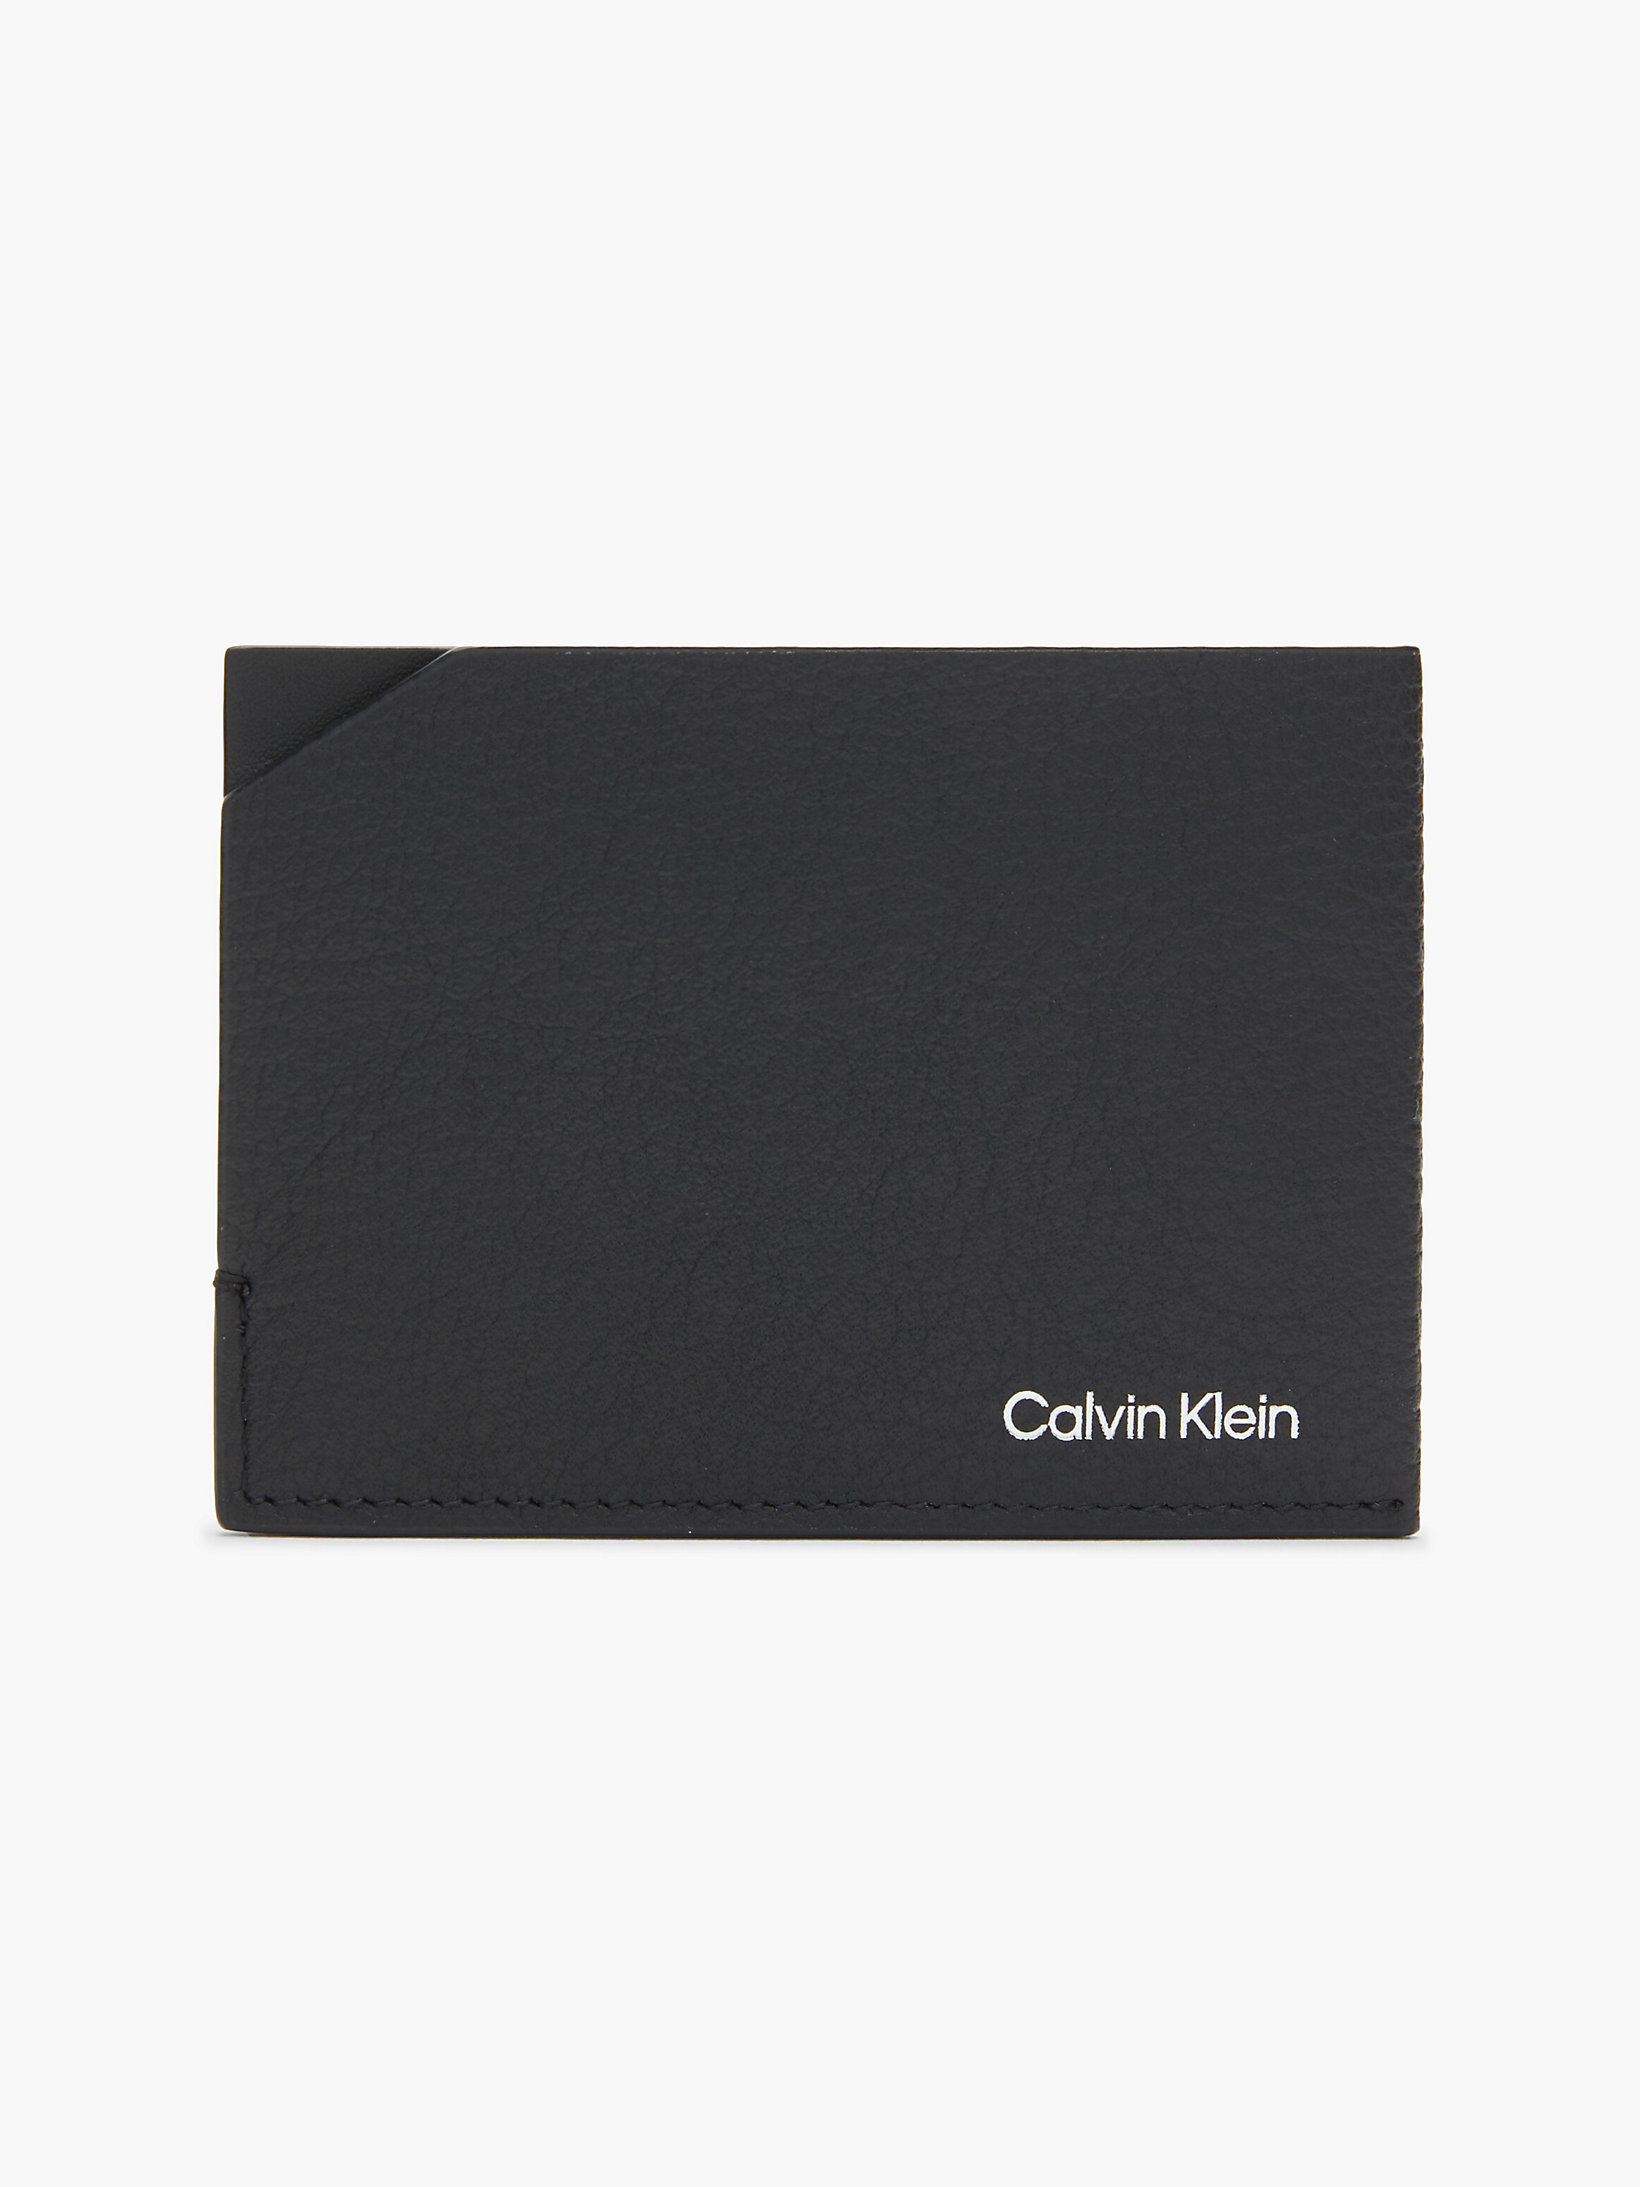 CK Black Leather Cardholder undefined men Calvin Klein